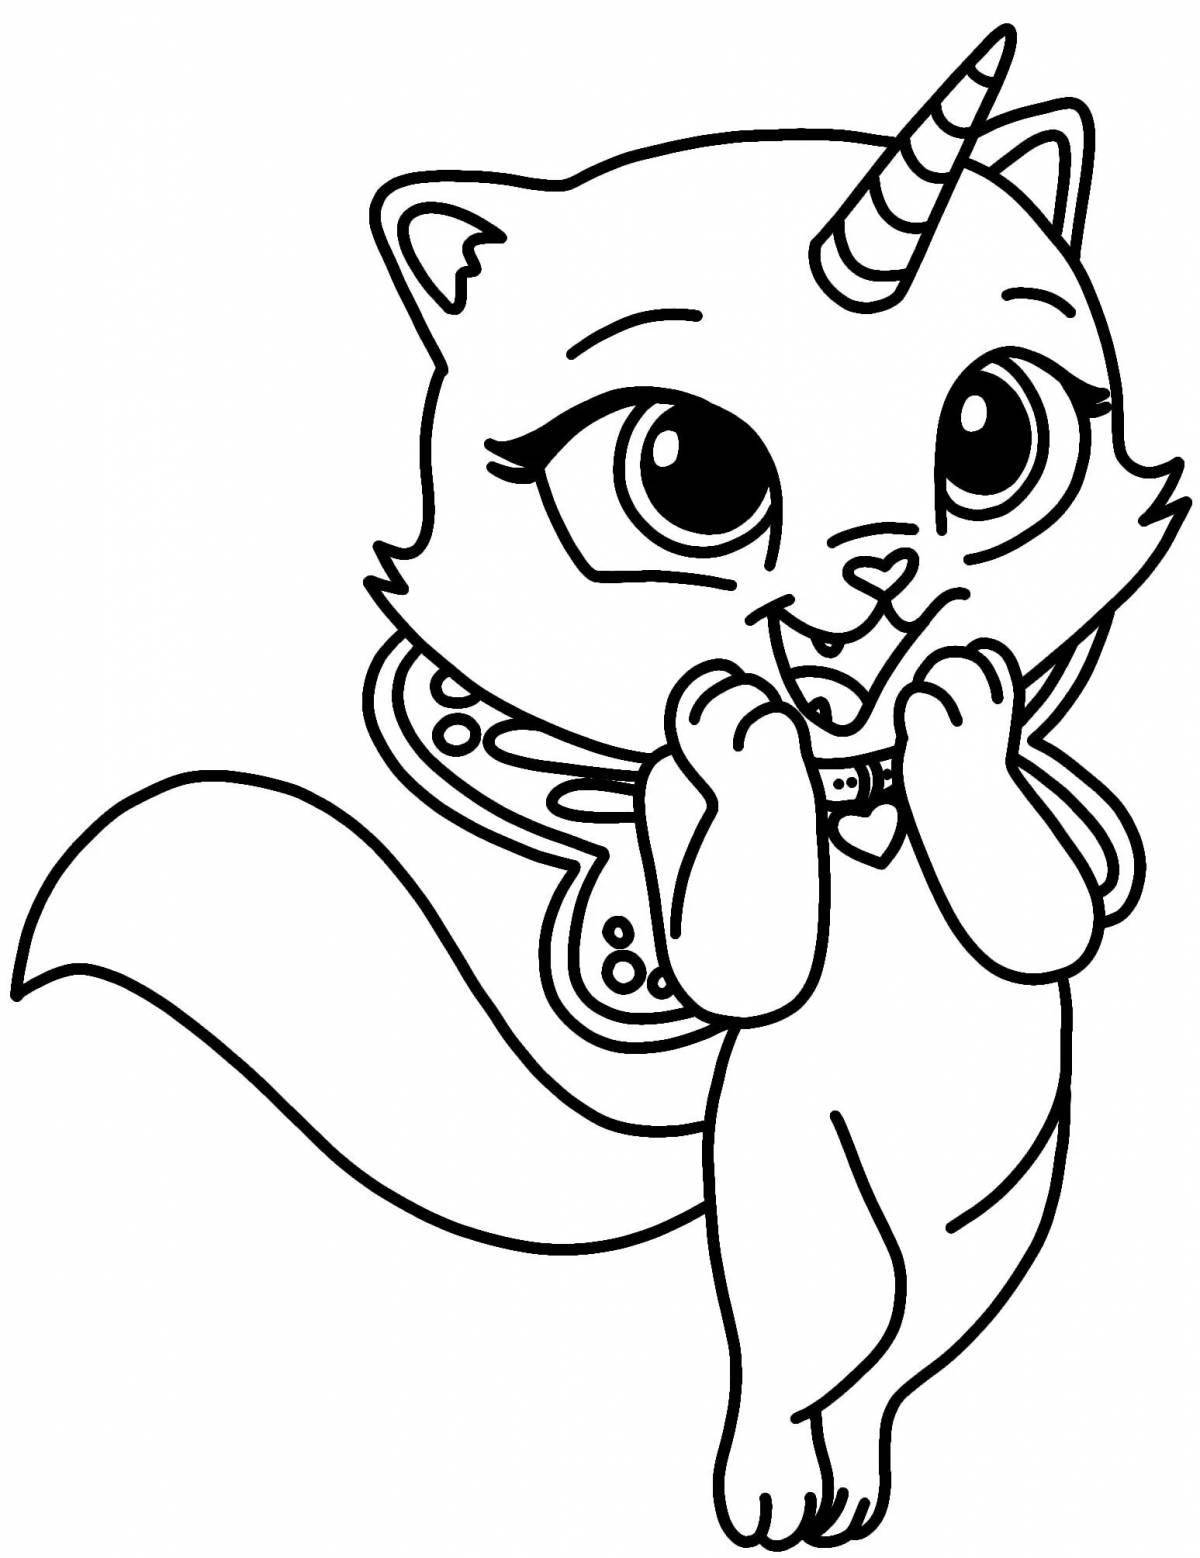 Королевская раскраска кот-единорог для детей